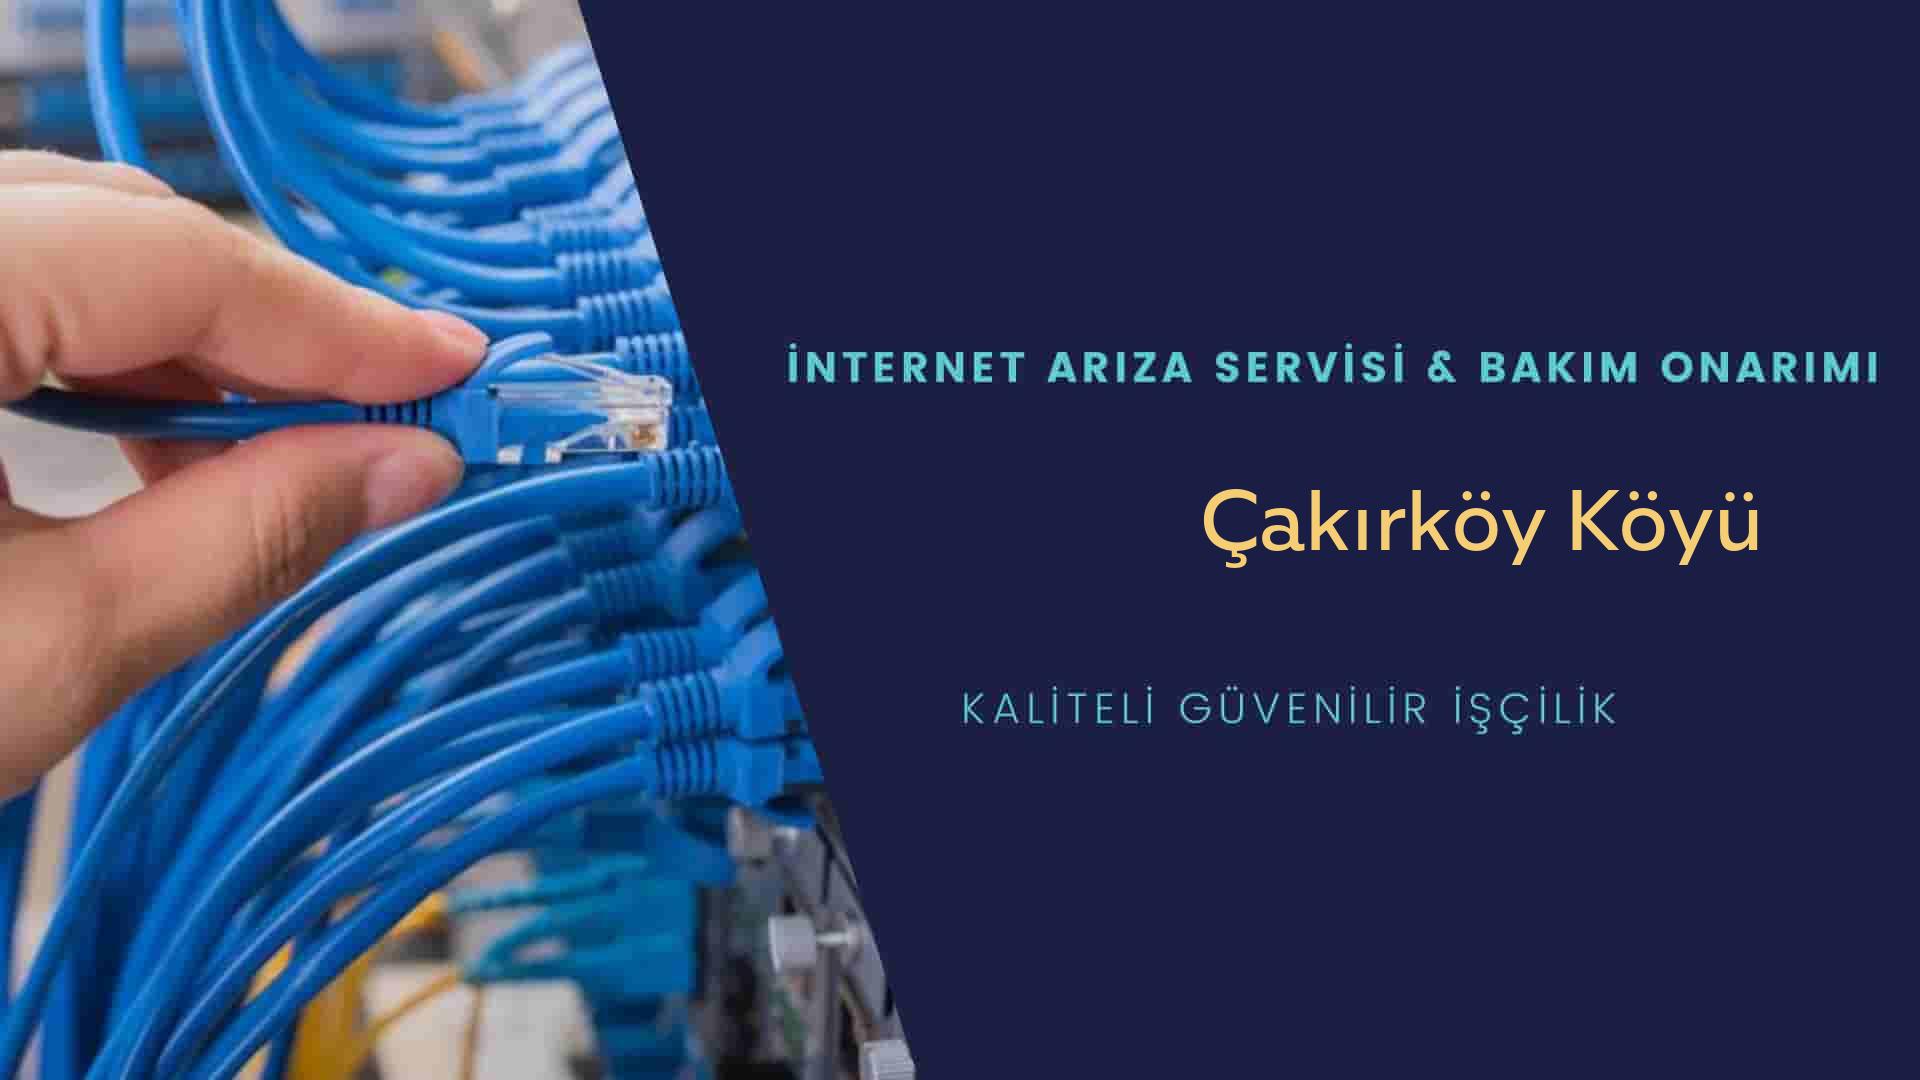 Çakırköy Köyü internet kablosu çekimi yapan yerler veya elektrikçiler mi? arıyorsunuz doğru yerdesiniz o zaman sizlere 7/24 yardımcı olacak profesyonel ustalarımız bir telefon kadar yakındır size.